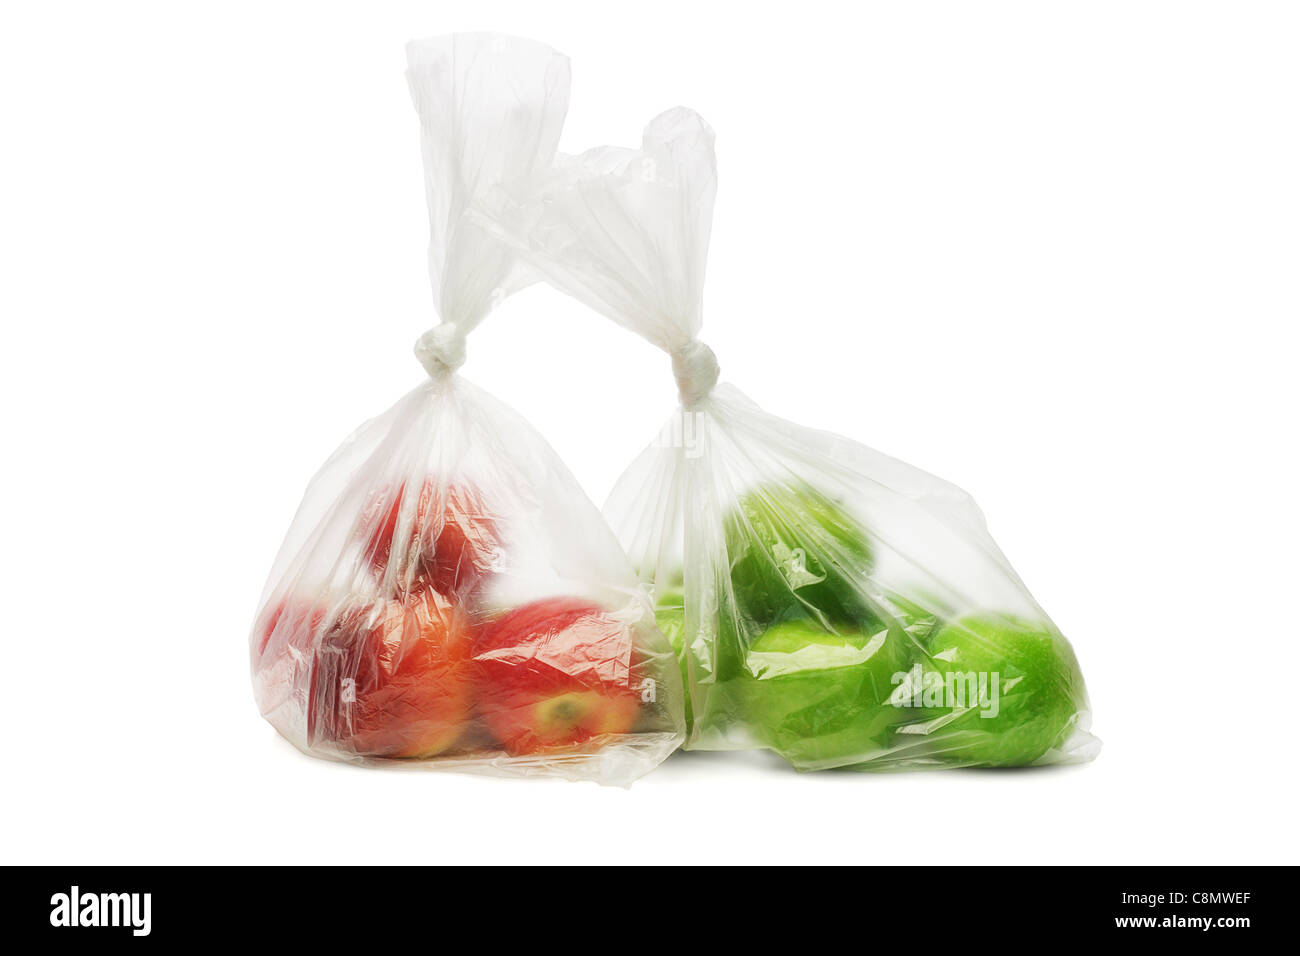 Deux sacs en plastique des pommes rouges et vertes sur fond blanc Banque D'Images